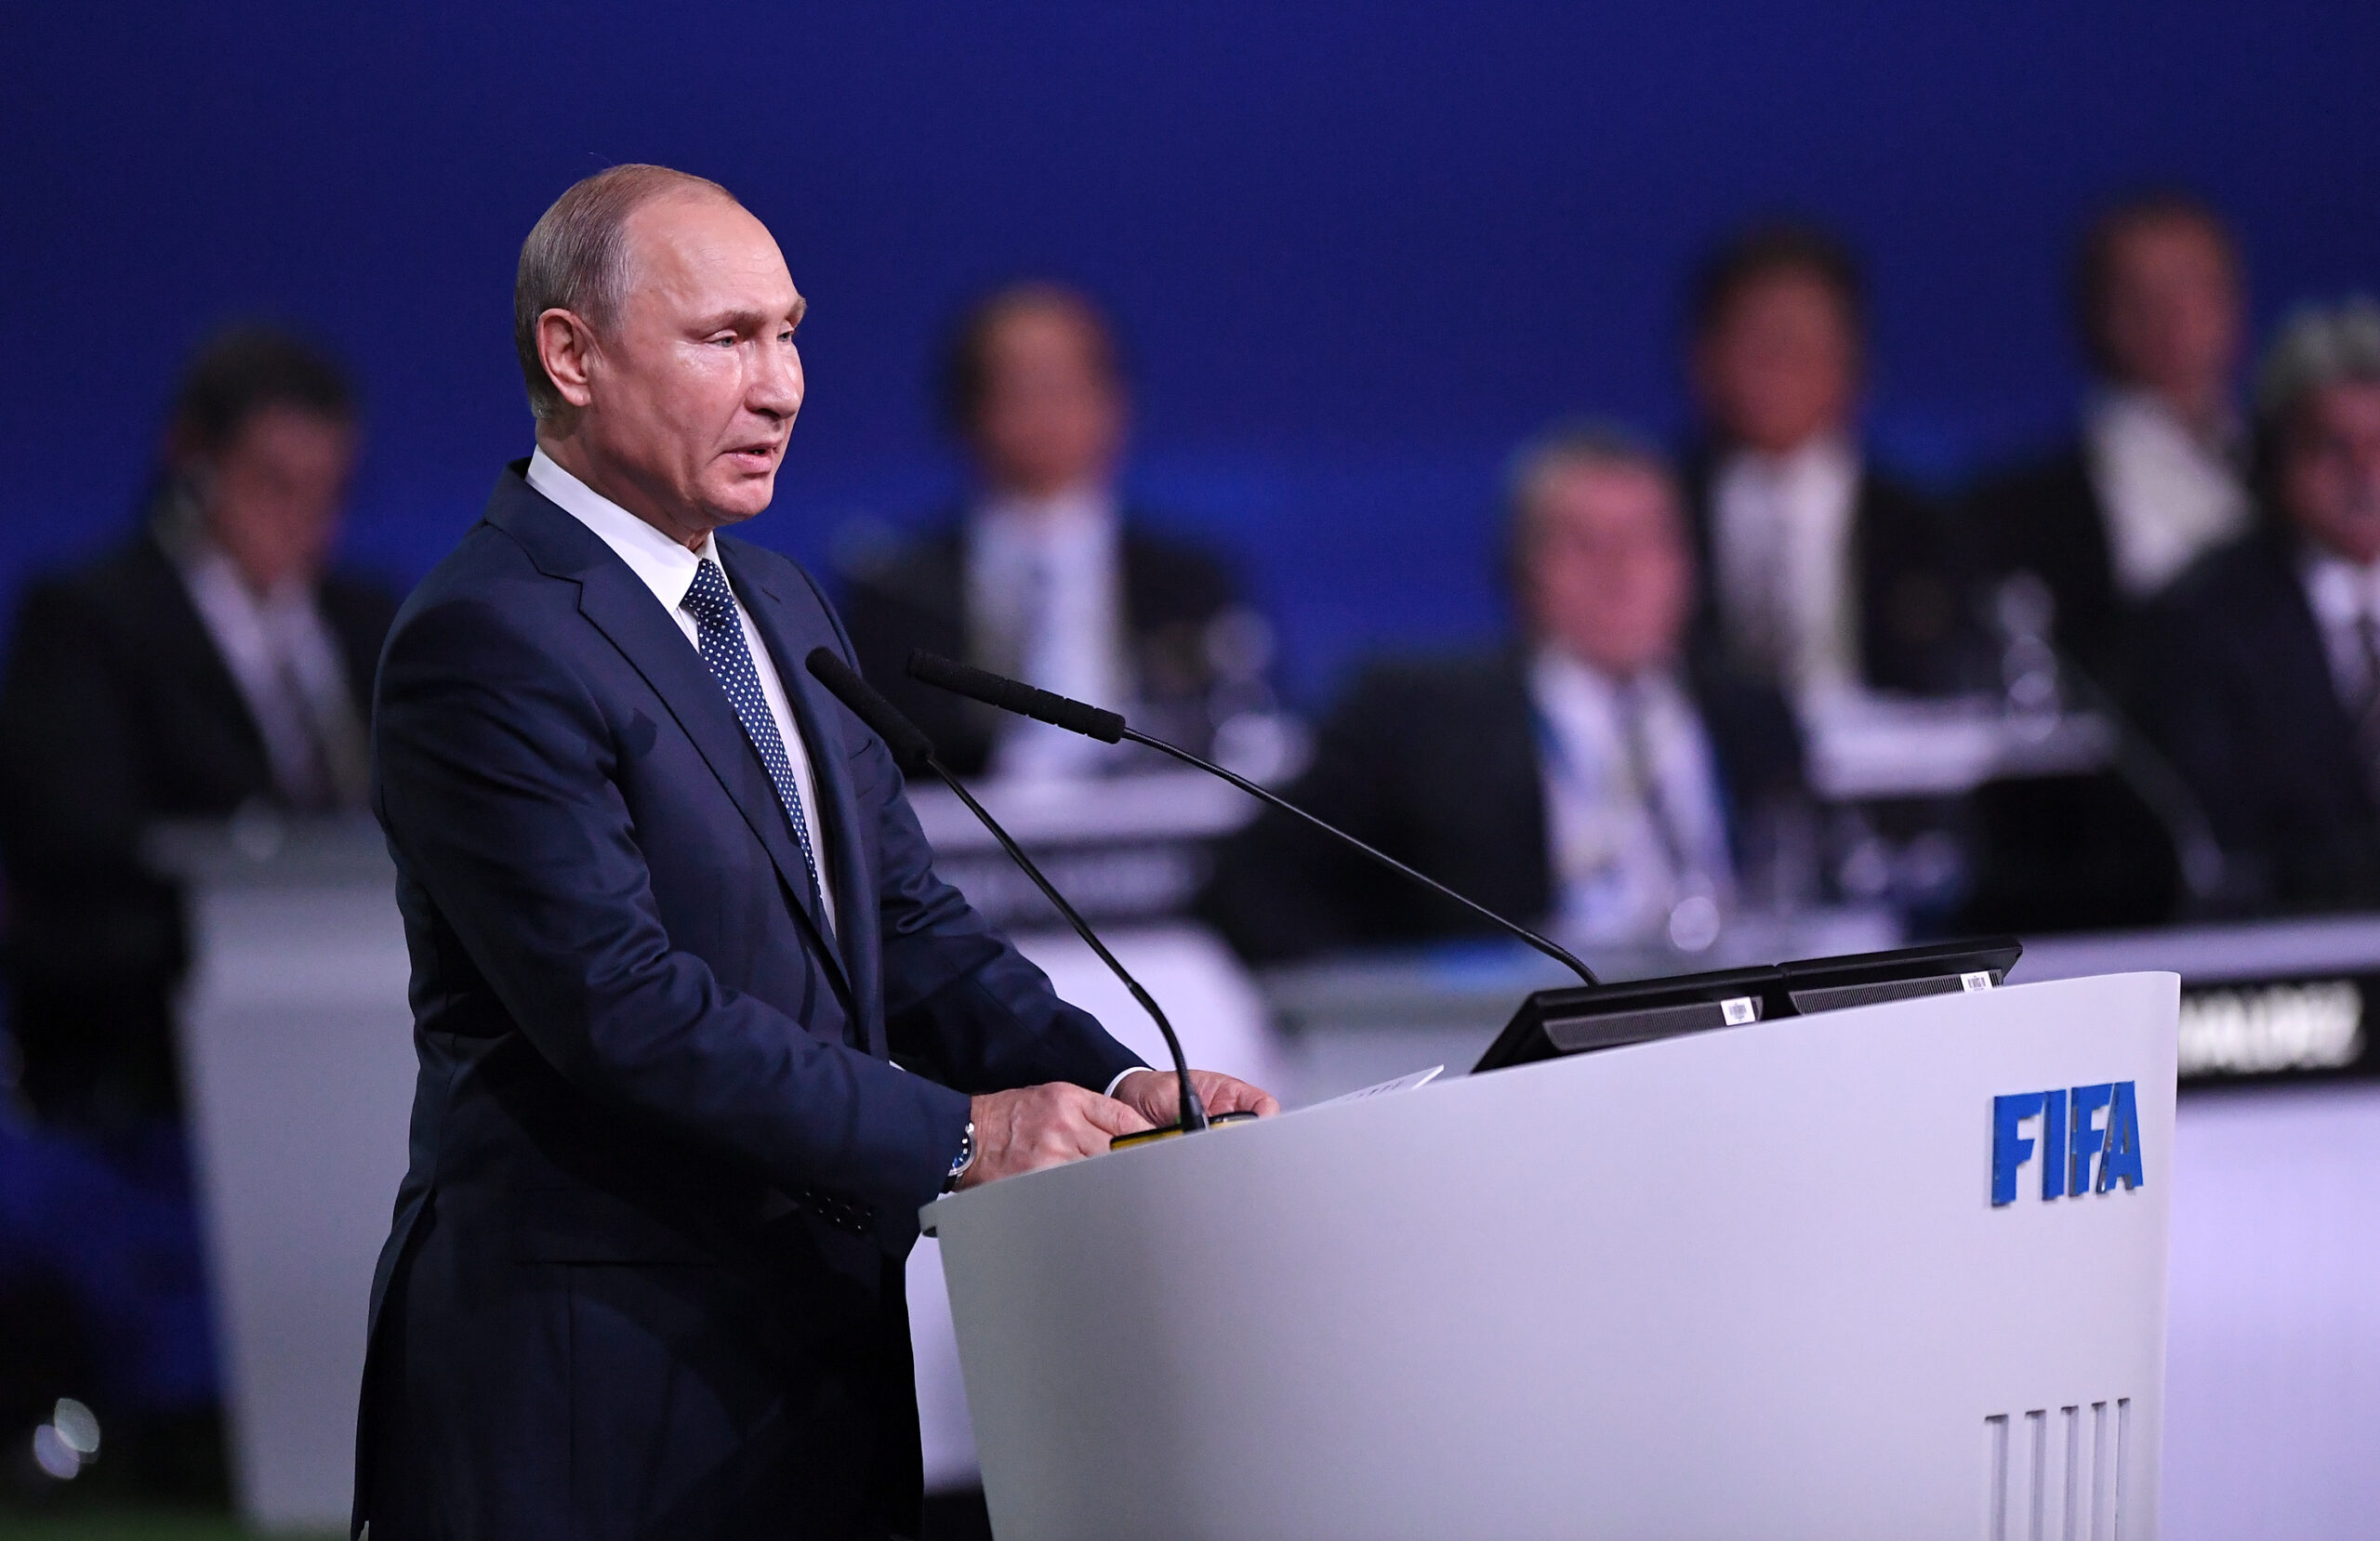 FIFA Kongress 2018 in Moskau - Der russische Praesident Wladimir Putin begruesst die FIFA